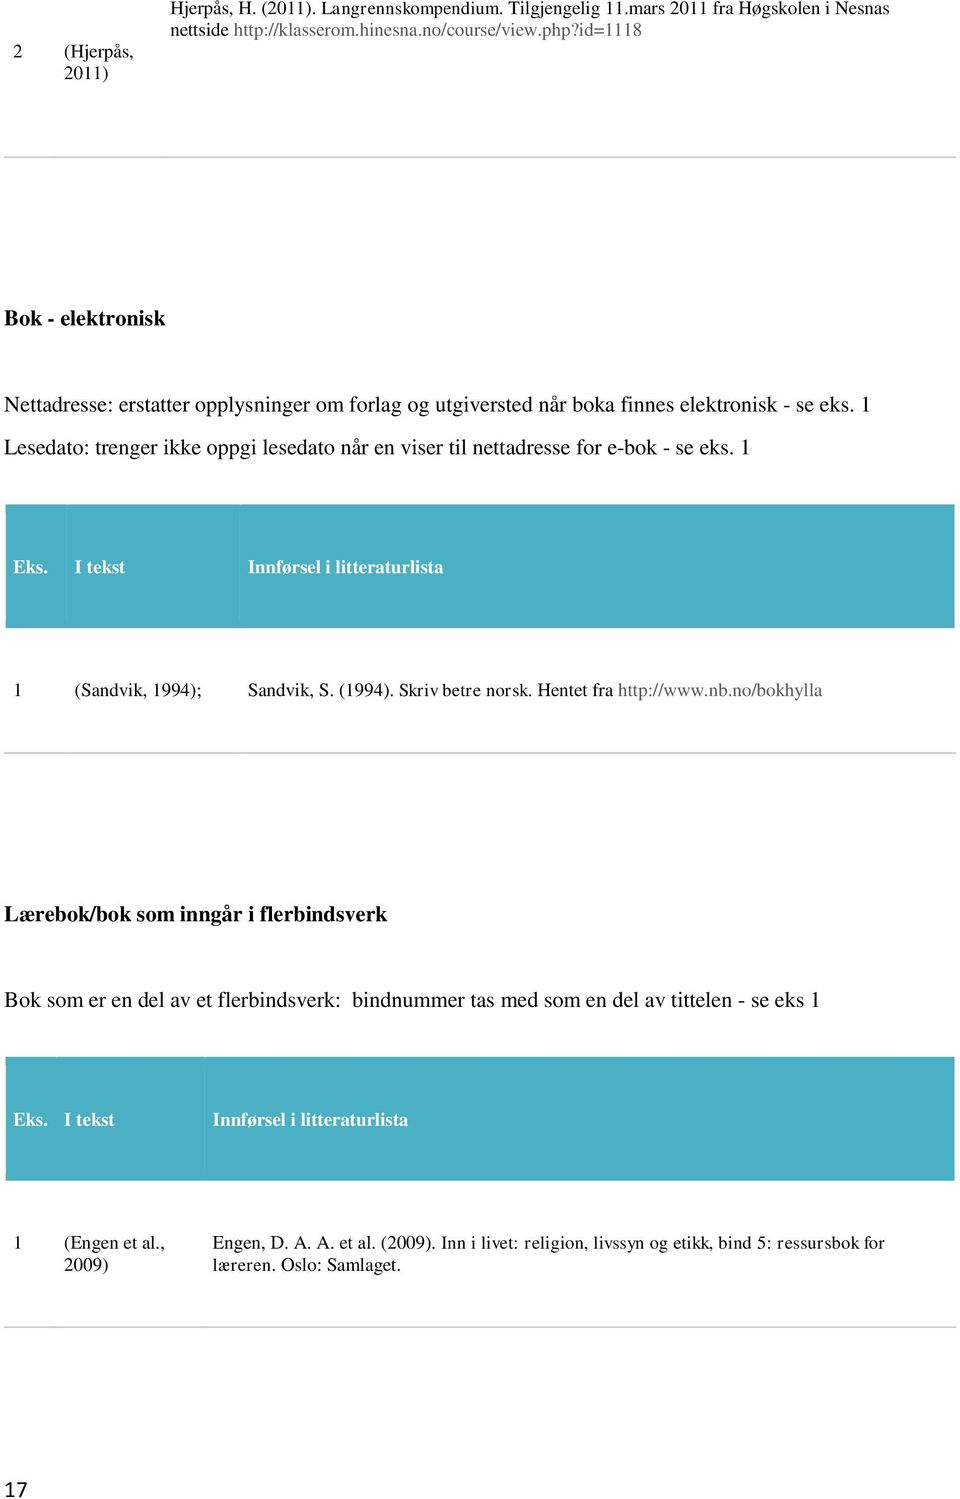 1 Lesedato: trenger ikke oppgi lesedato når en viser til nettadresse for e-bok - se eks. 1 1 (Sandvik, 1994); Sandvik, S. (1994). Skriv betre norsk. Hentet fra http://www.nb.